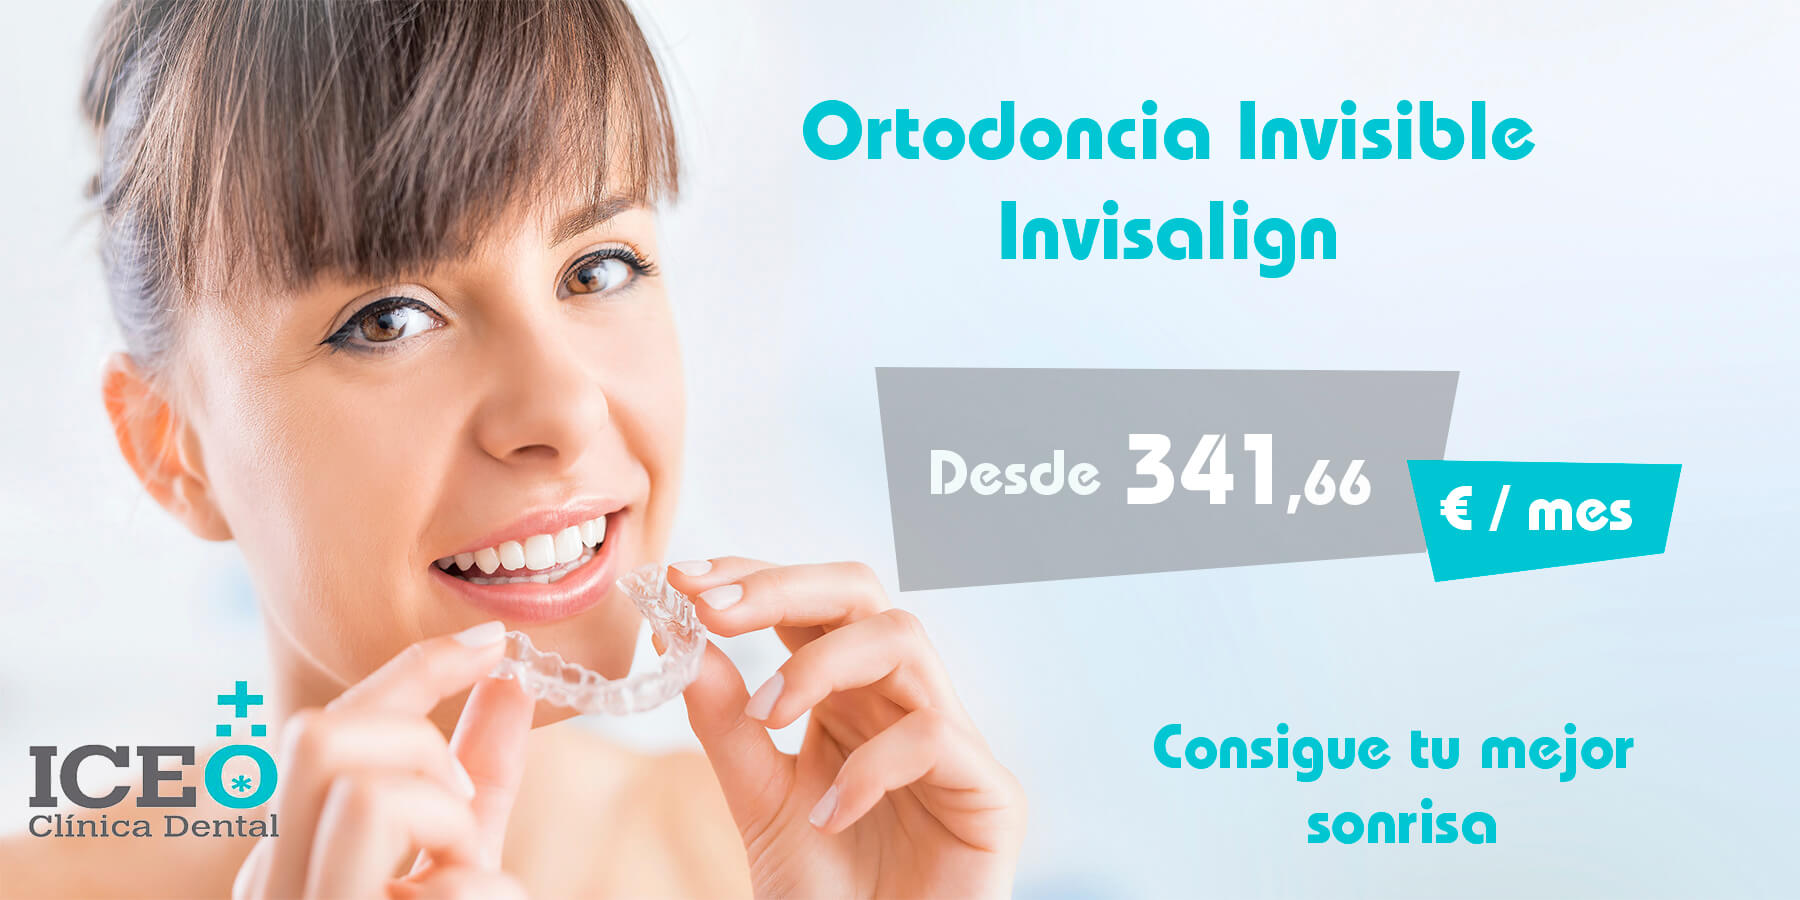 Ortodoncia Invisible Invisalign en Las Palmas desde 341 